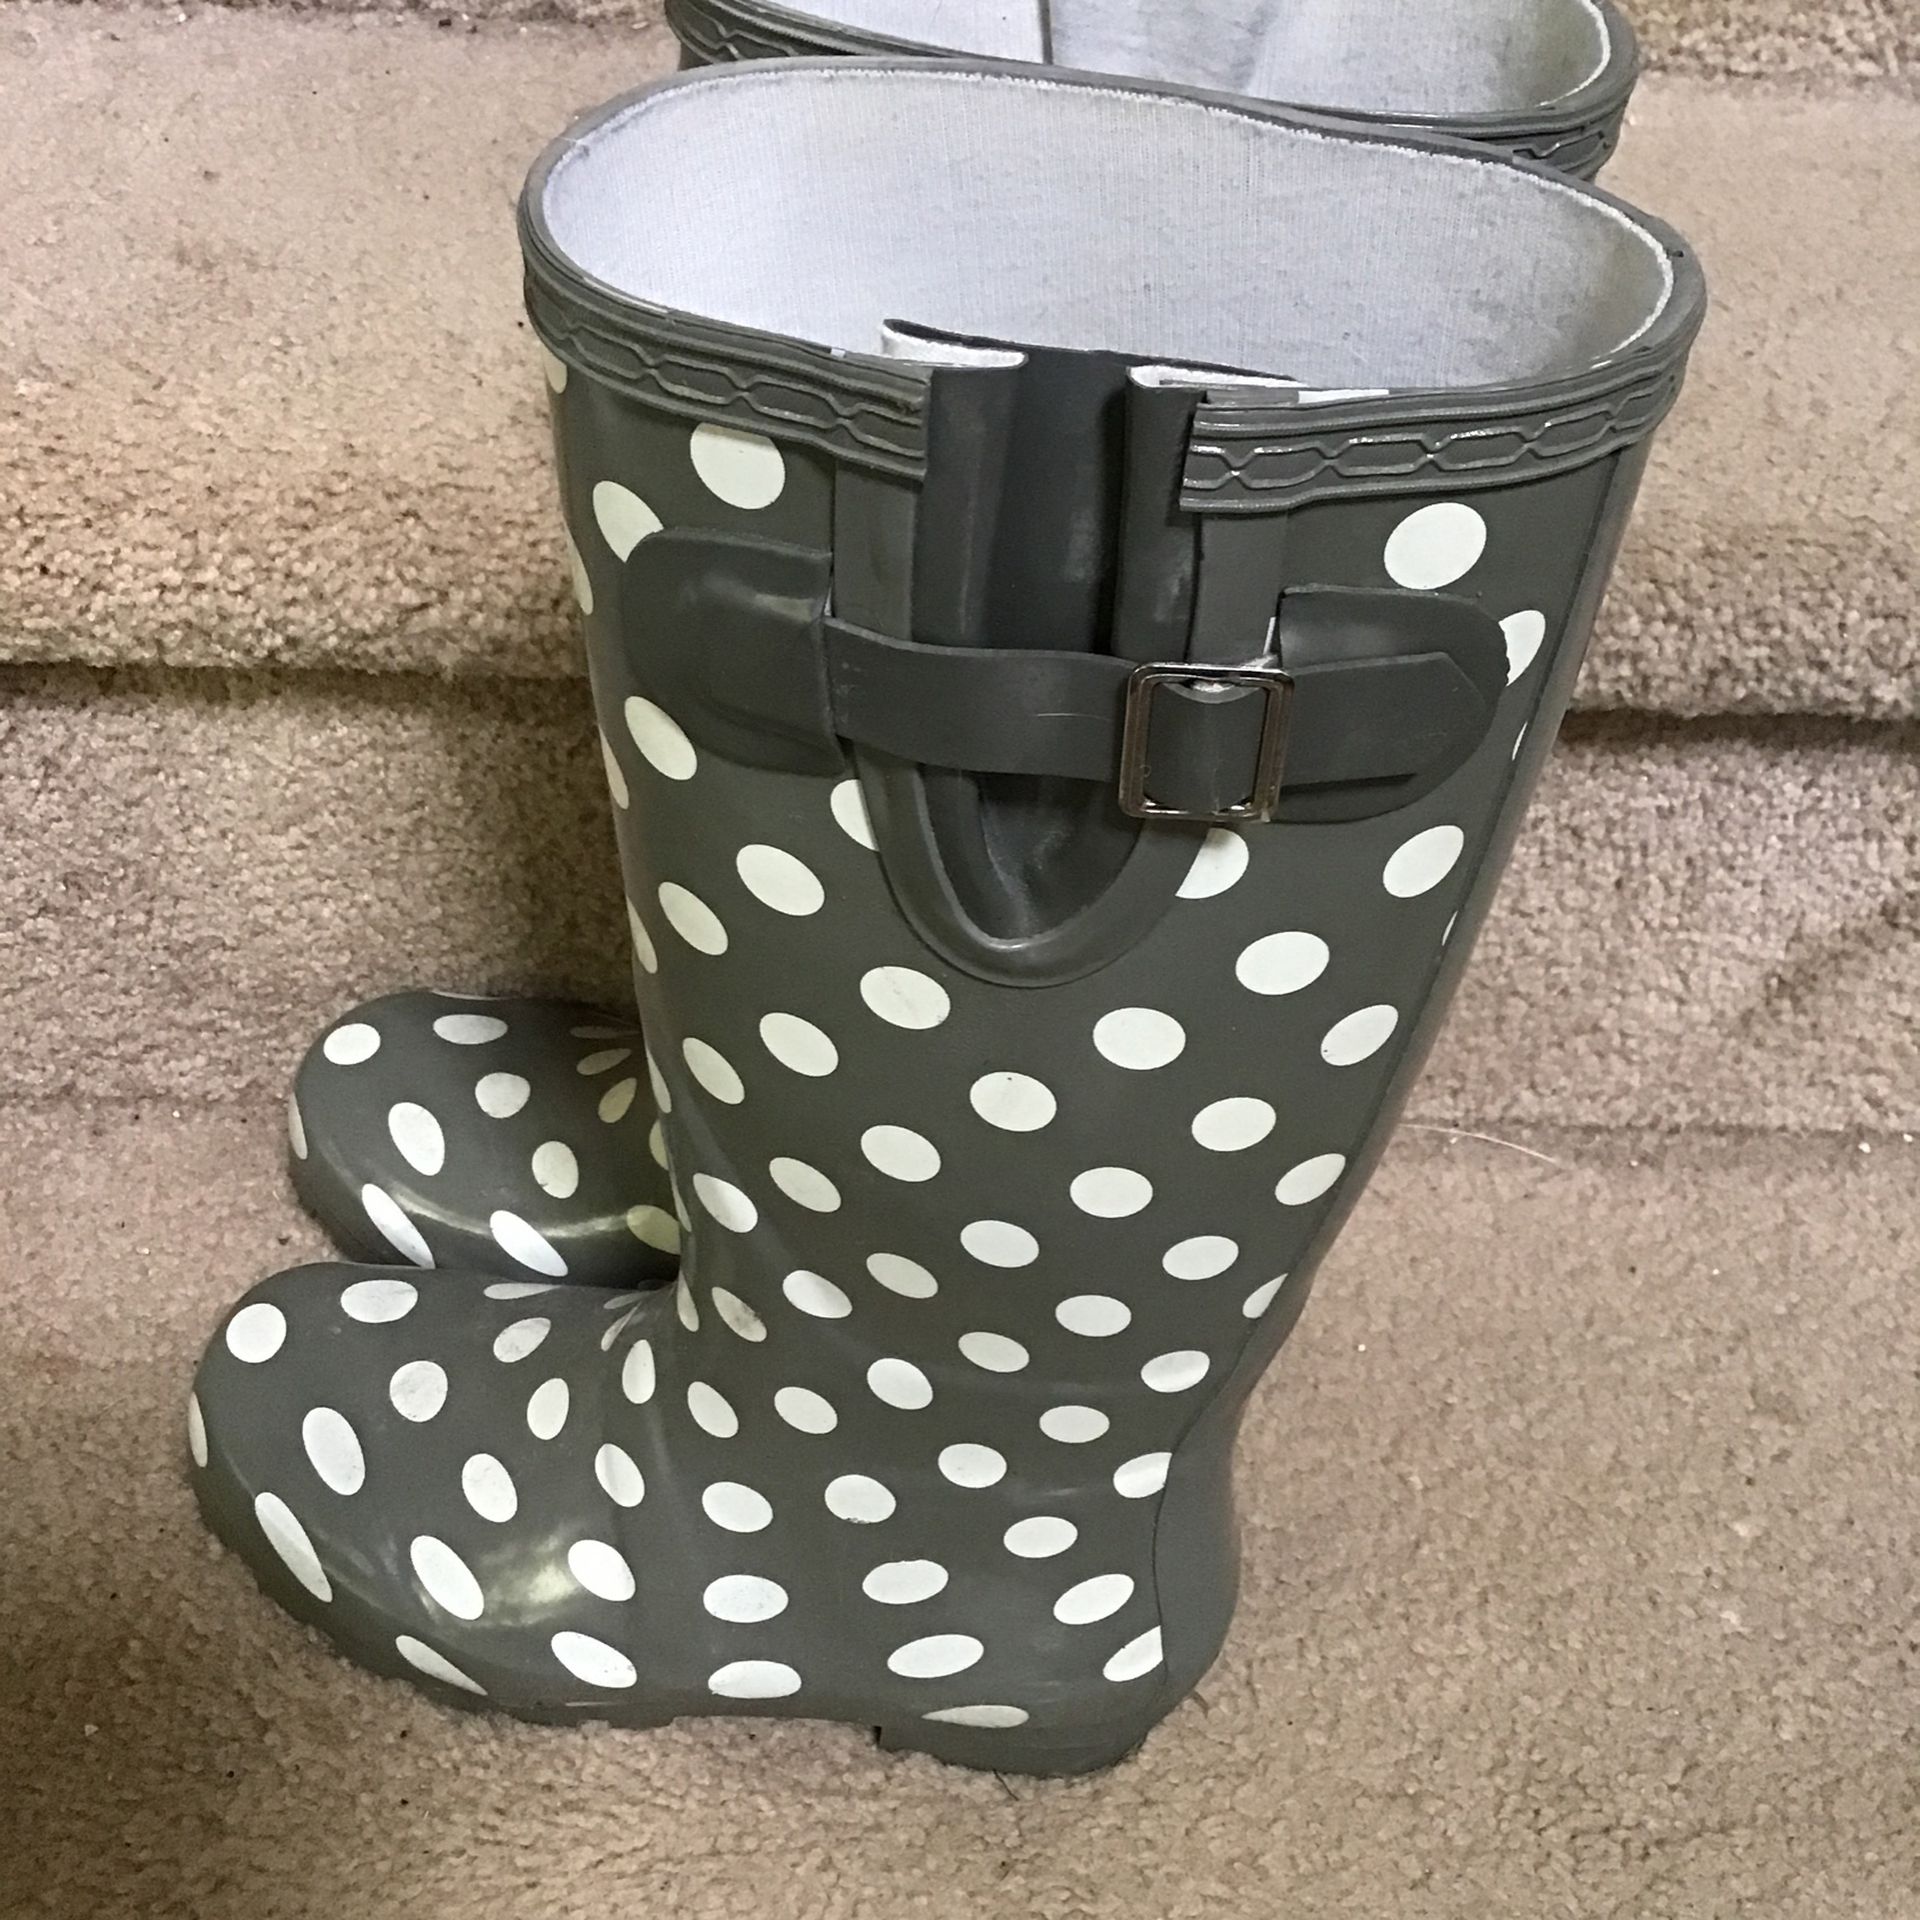 Girls Rain boots